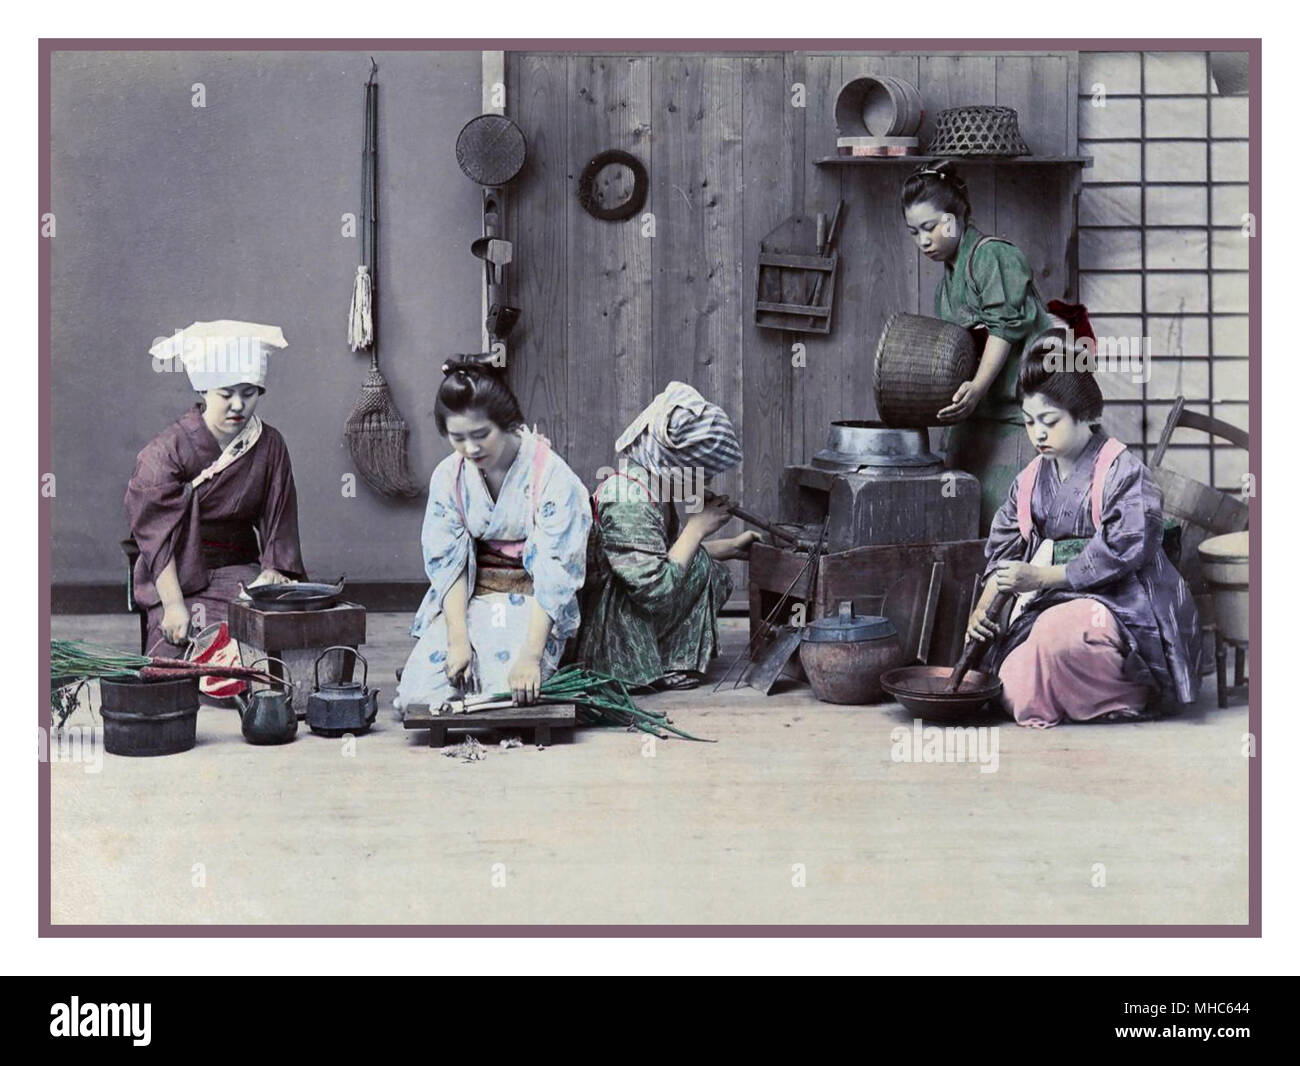 Giappone periodo Meiji 1880-1890 dei lavoratori di sesso femminile in una cucina per preparare la cena. La litografia a colori Photochrom tecnica di immagine di circa 1880-1890. Periodo Meiji (明治時代 Meiji-jidai), noto anche come l'epoca Meiji, giapponese è un epoca che si estendeva dal 23 ottobre 1868 al 30 luglio 1912. Questo periodo rappresenta la prima metà dell'impero del Giappone durante la quale la società giapponese di mosso da un isolato società feudale alla sua forma moderna. Foto Stock